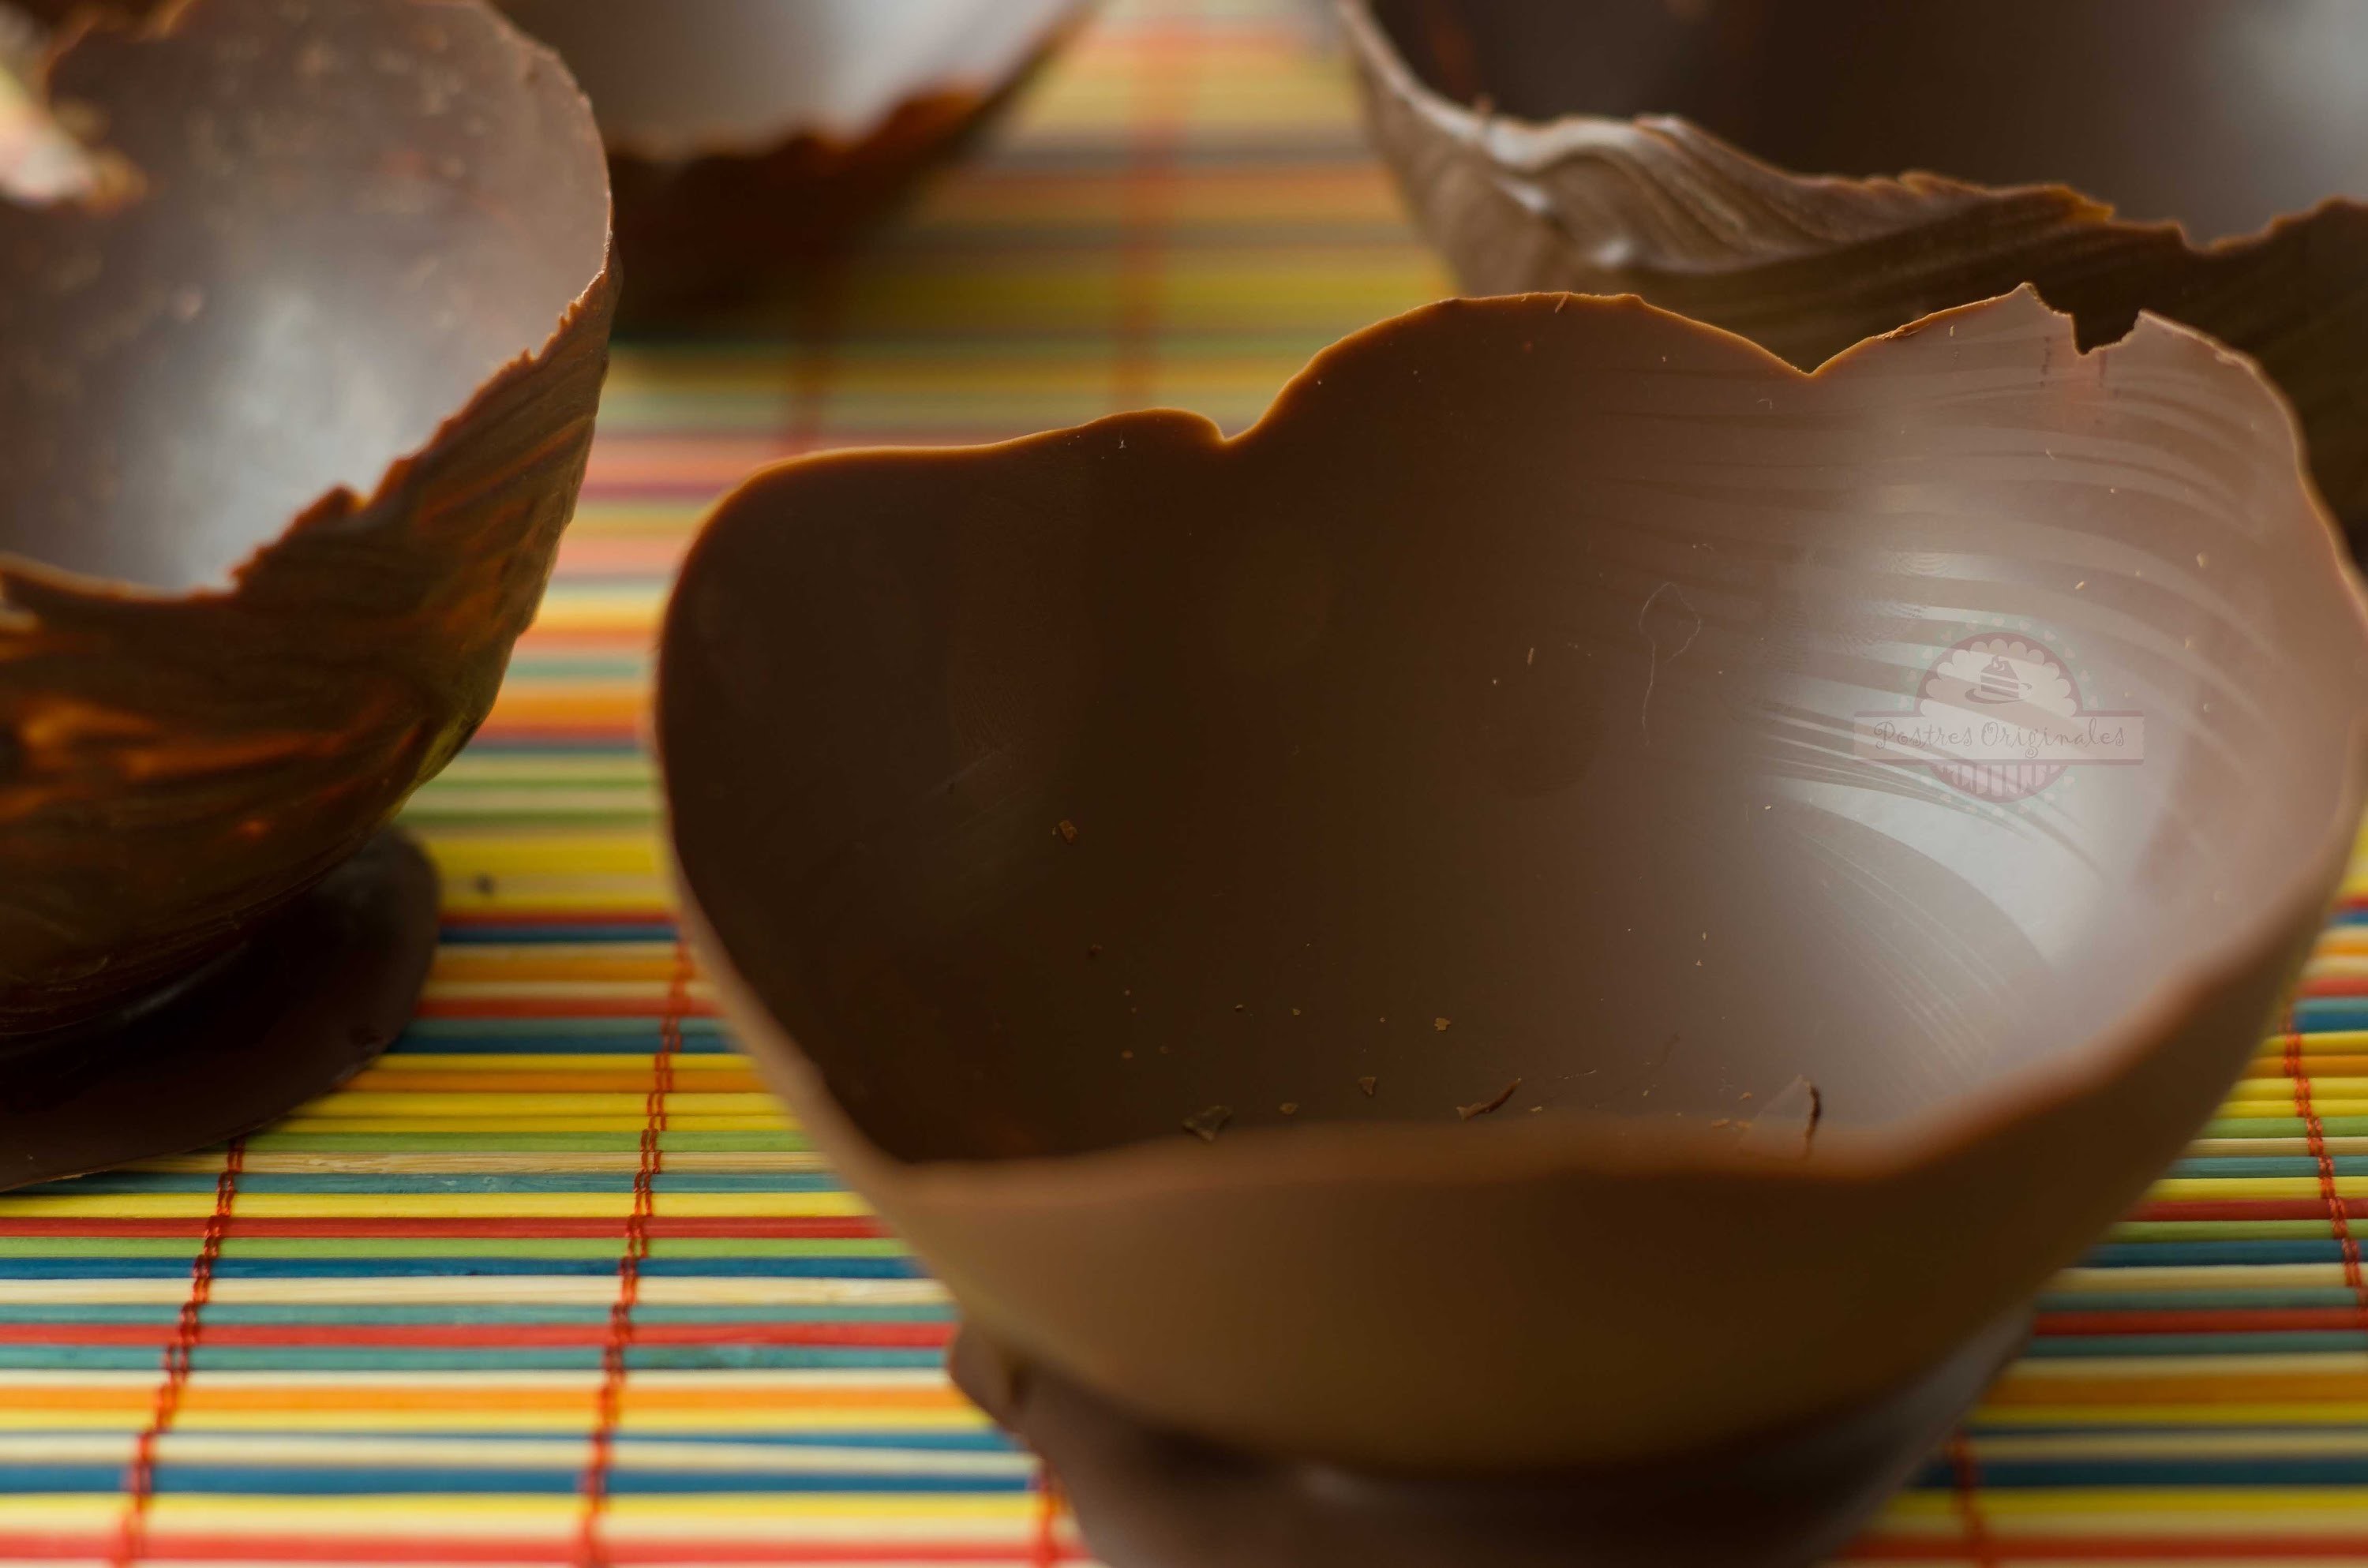 ¿Cómo hacer Cuencos de Chocolate? - Chocolate Bowls - DIY